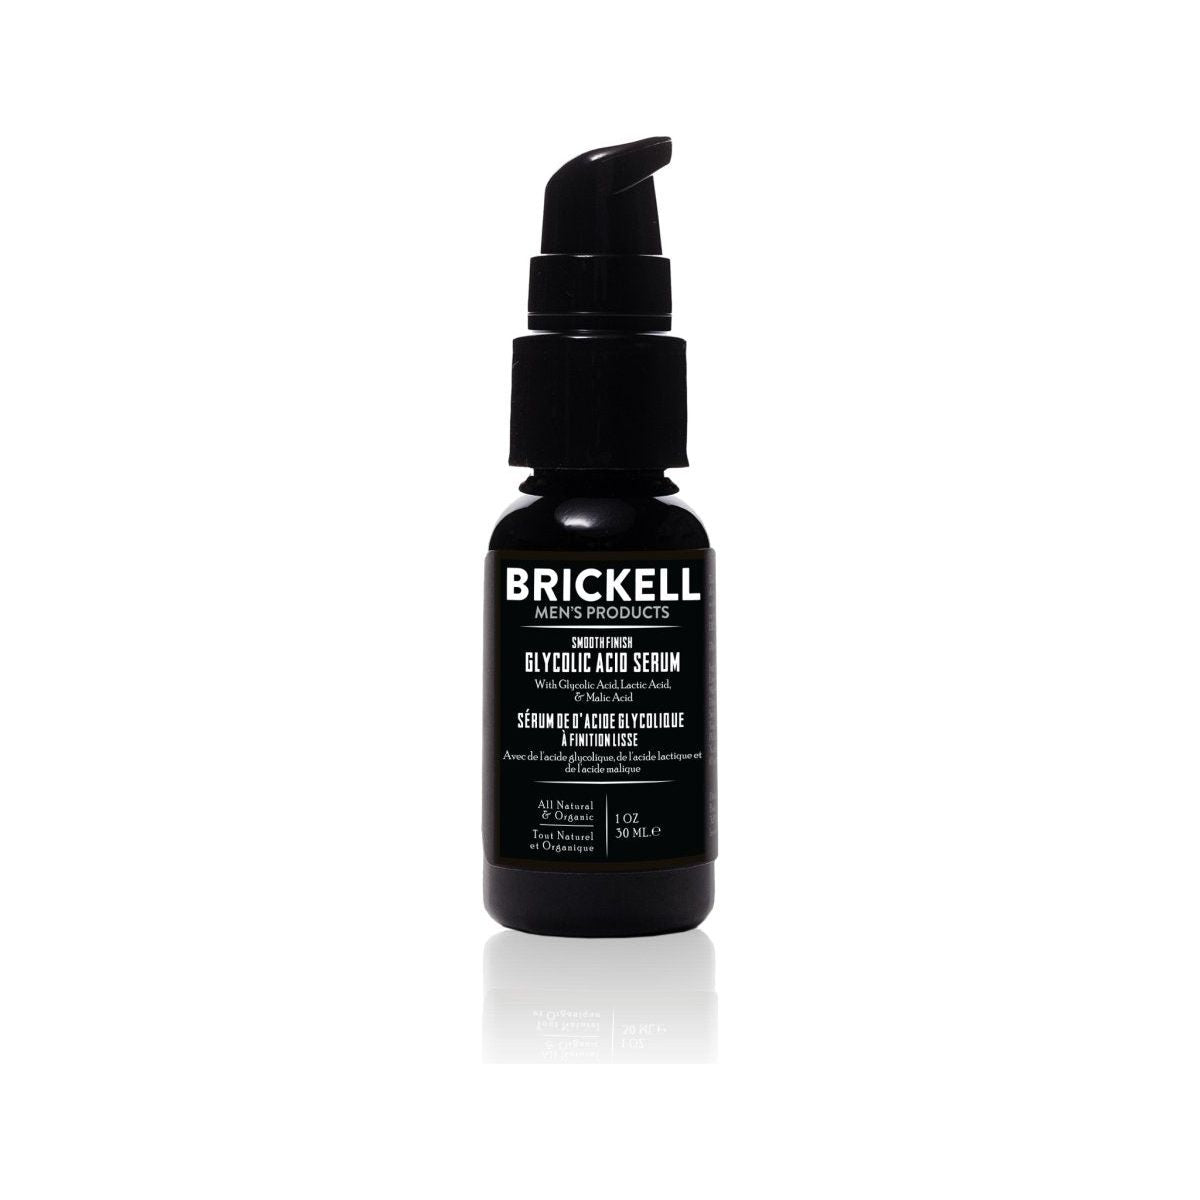 Brickell Smooth Finish Glycolic Acid Serum - 29ml - Glam Global UK